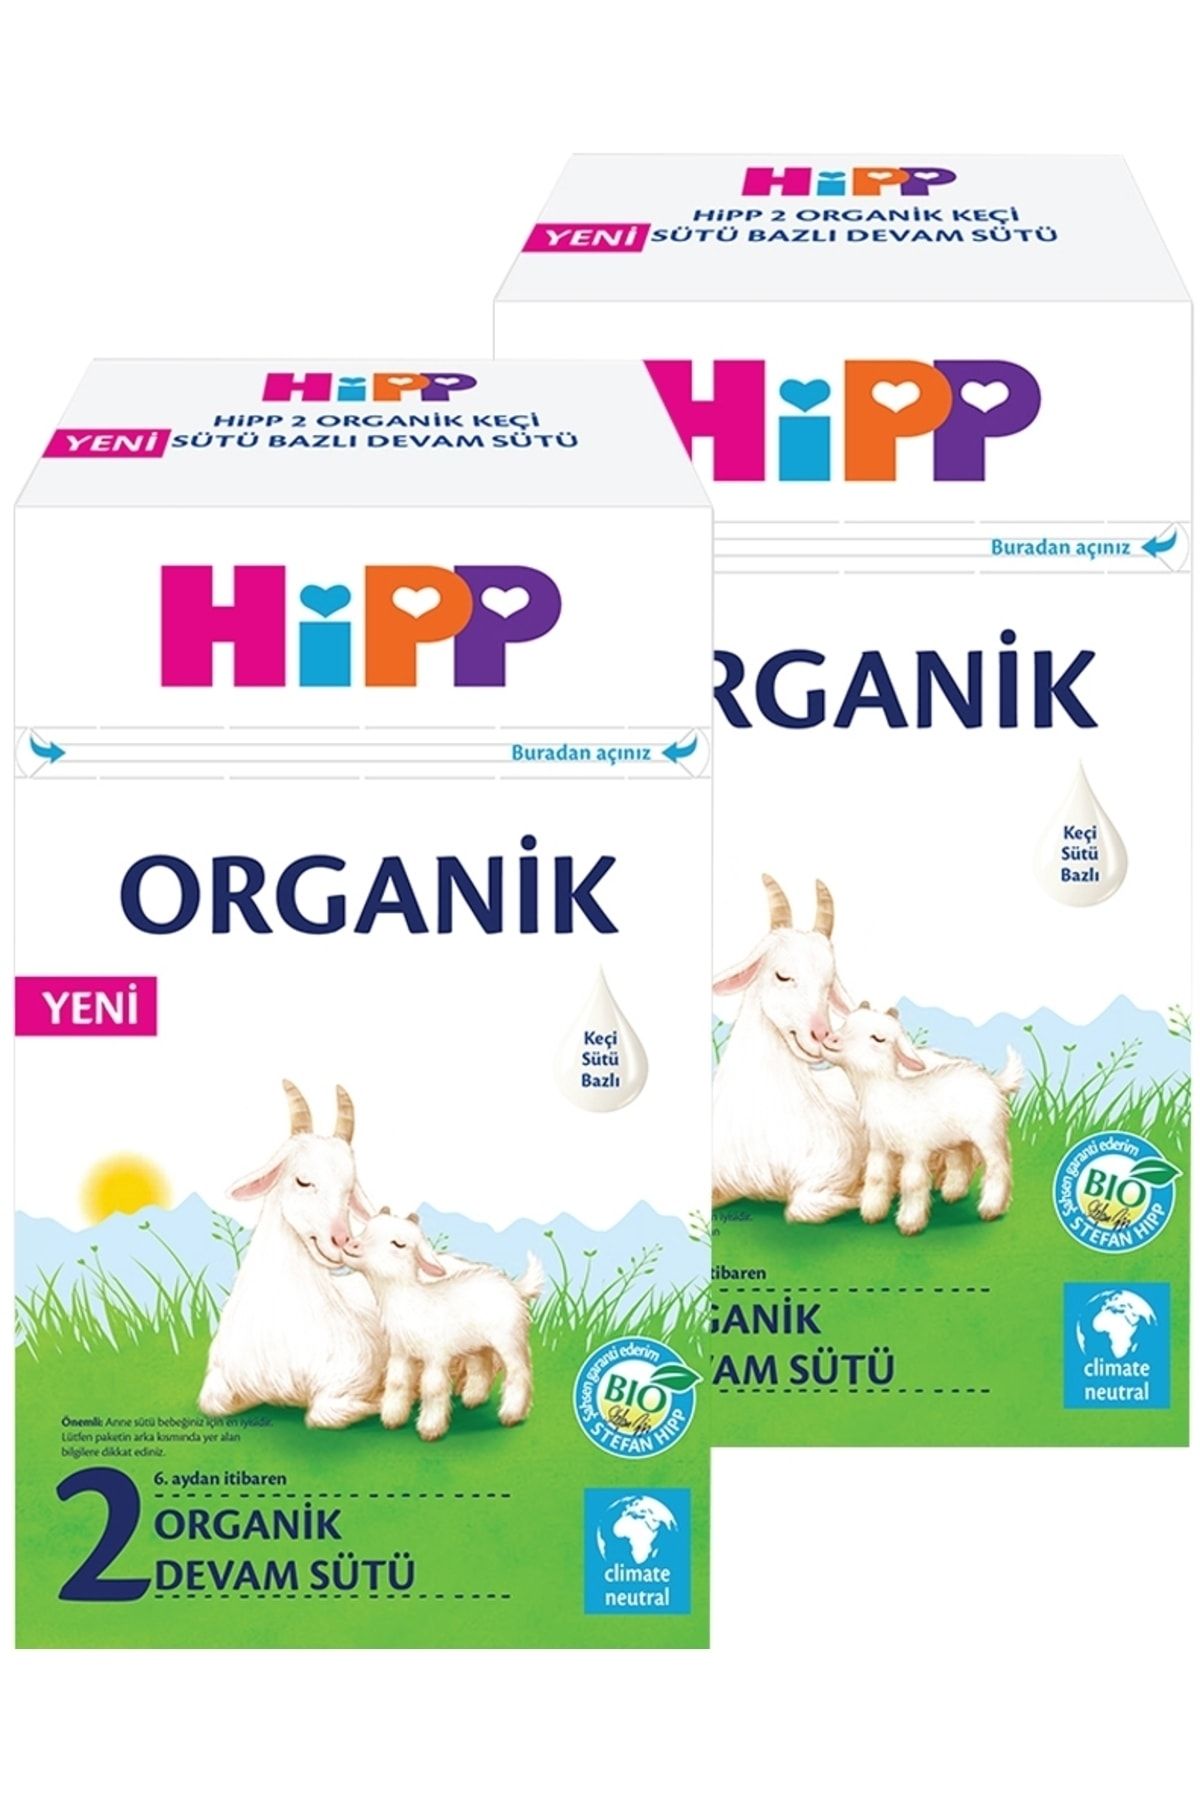 Hipp 2 Organik Keçi Sütü Bazlı Devam Sütü 400 Gr X 2 Adet